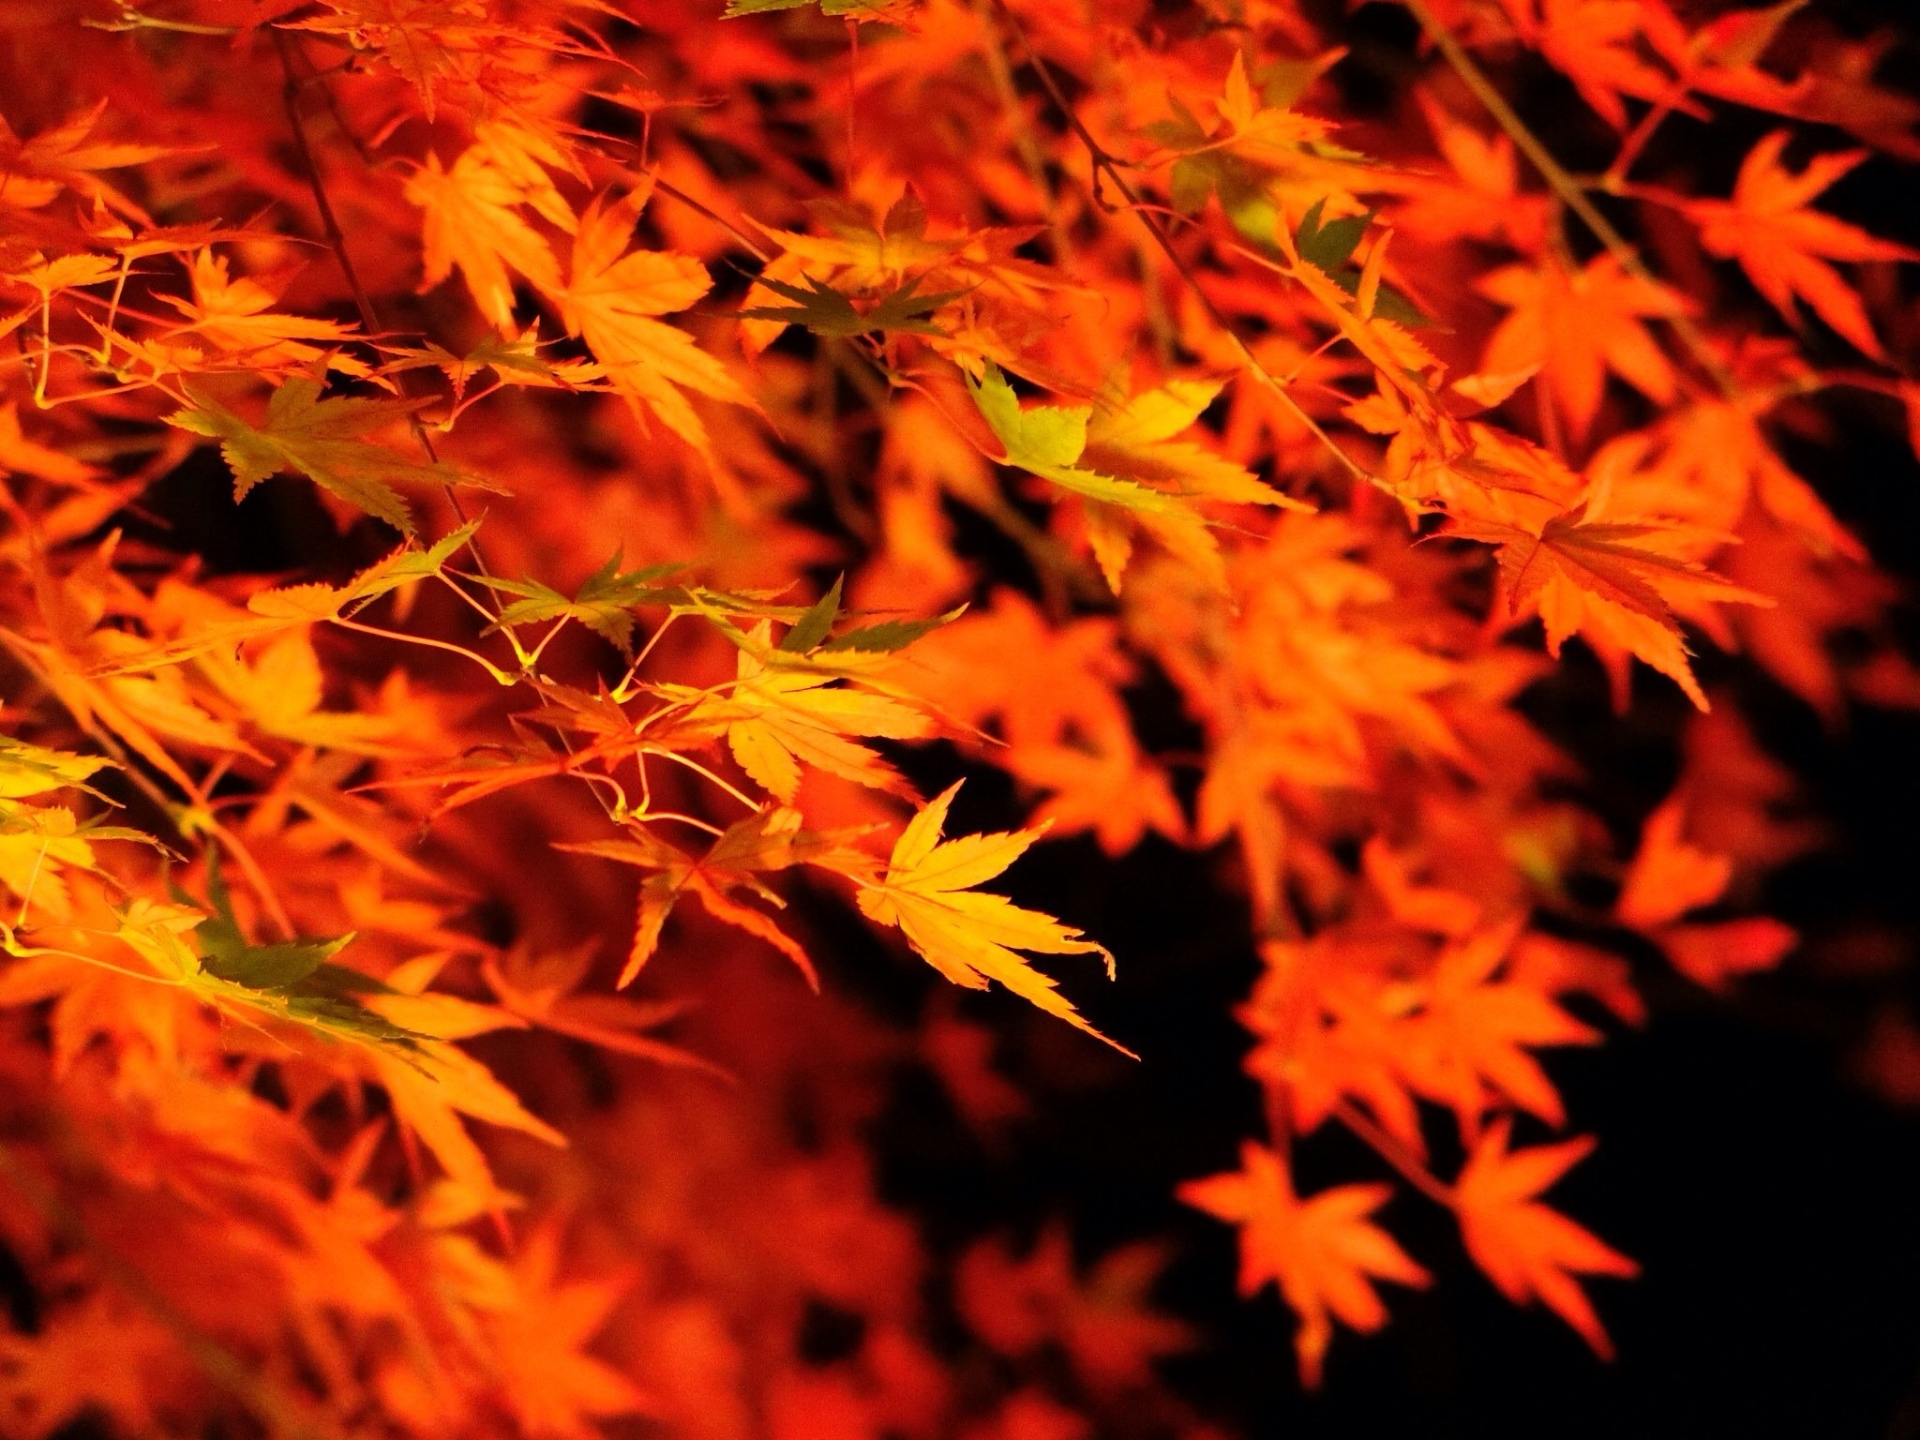 埼玉県営和光樹林公園の紅葉